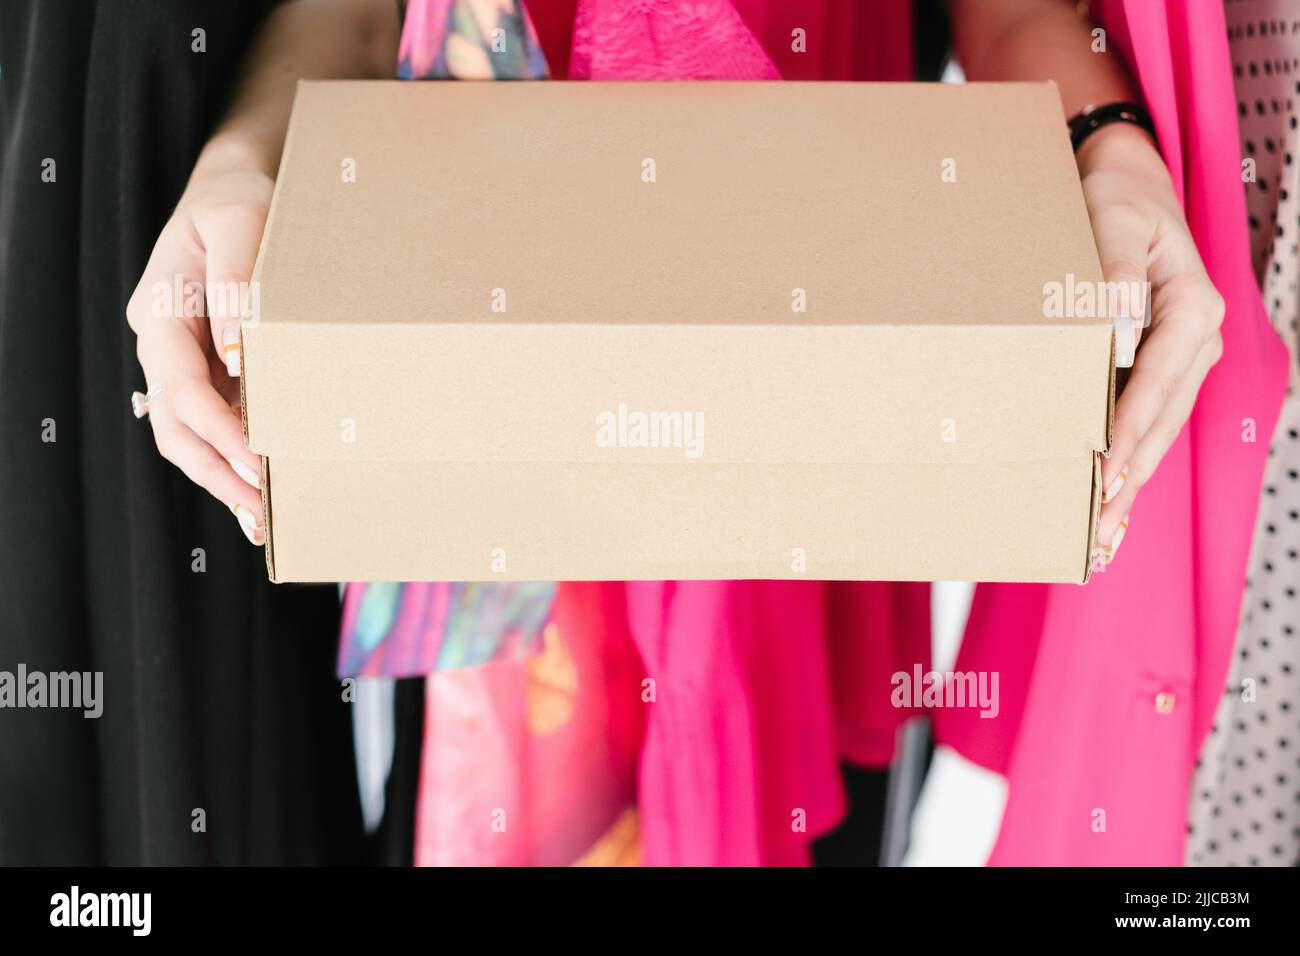 shoebox fashion shopping lifestyle hands holding Stock Photo